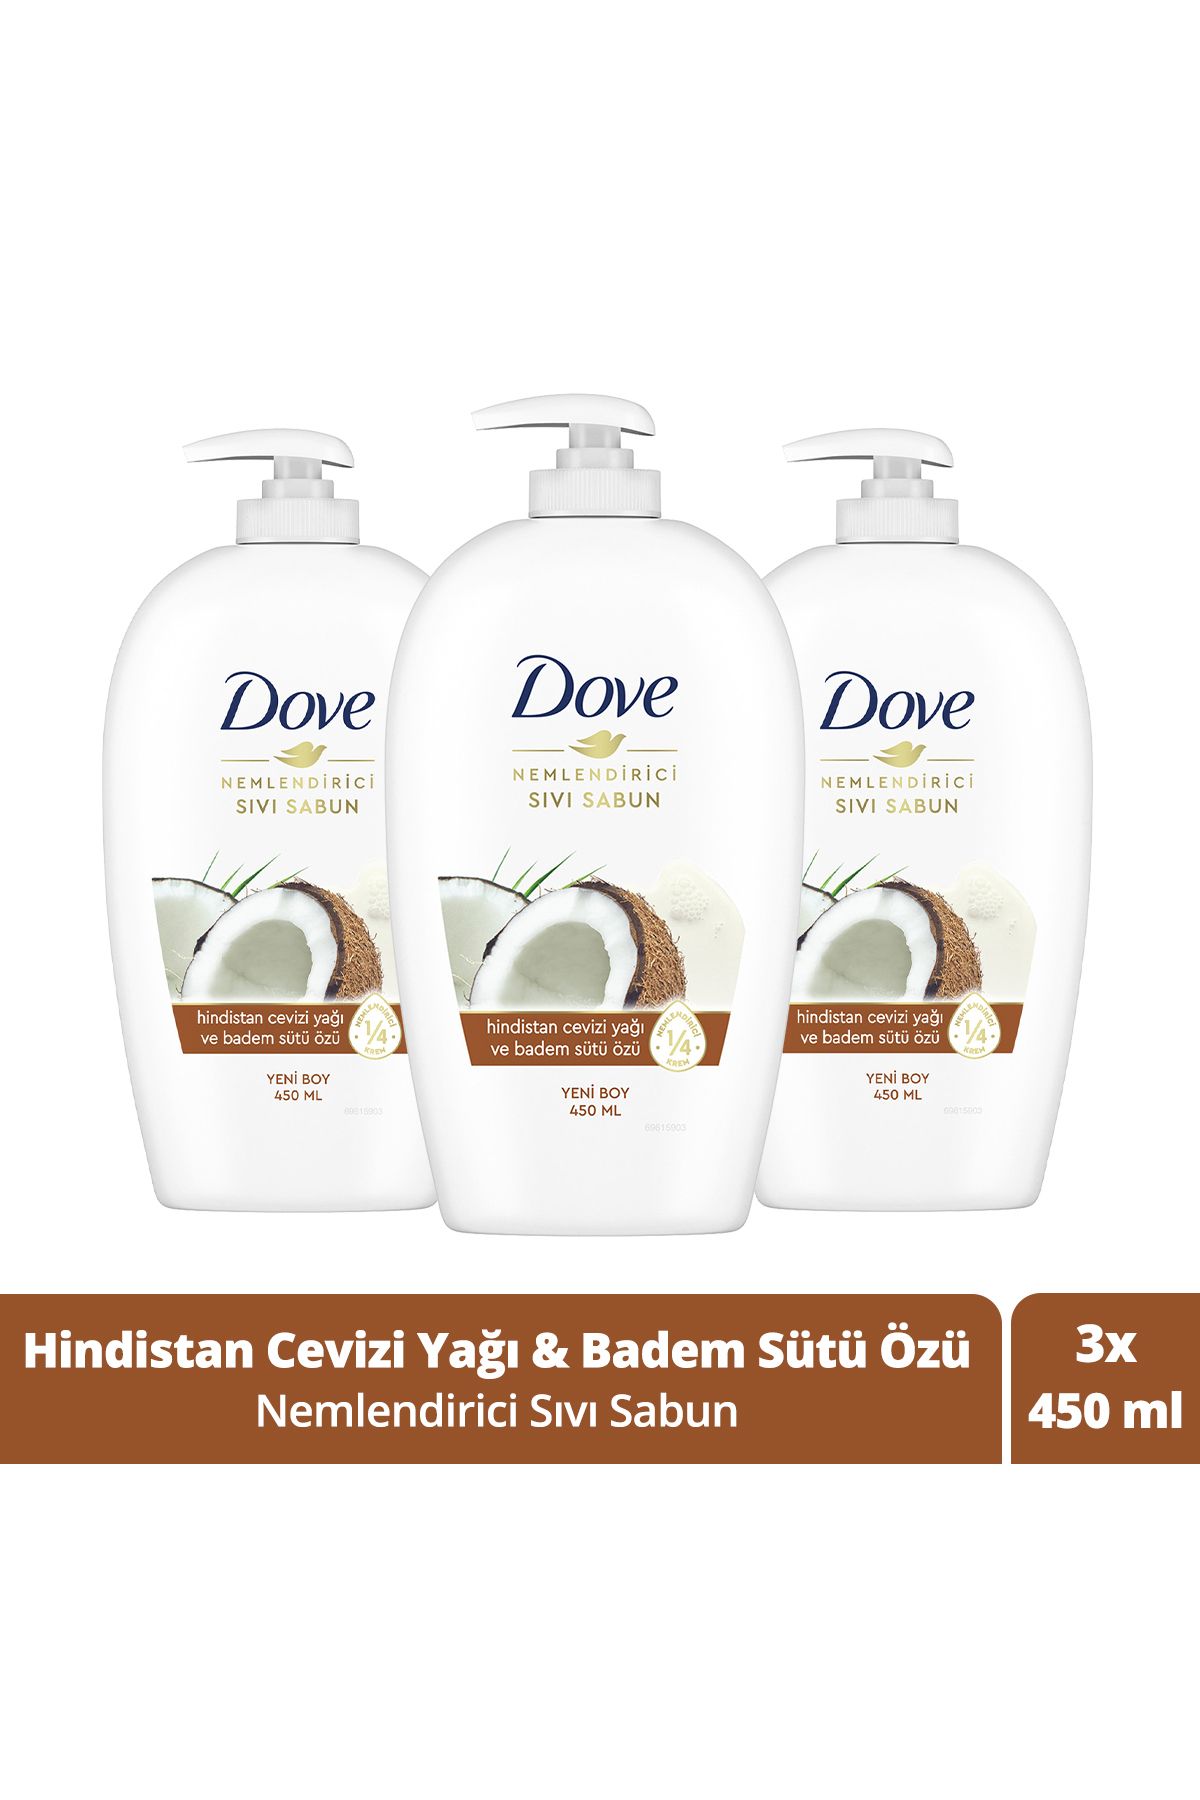 Dove Nemlendirici Sıvı Sabun Hindistan Cevizi Yağı Ve Badem Sütü Özü 450 ml X3 Adet